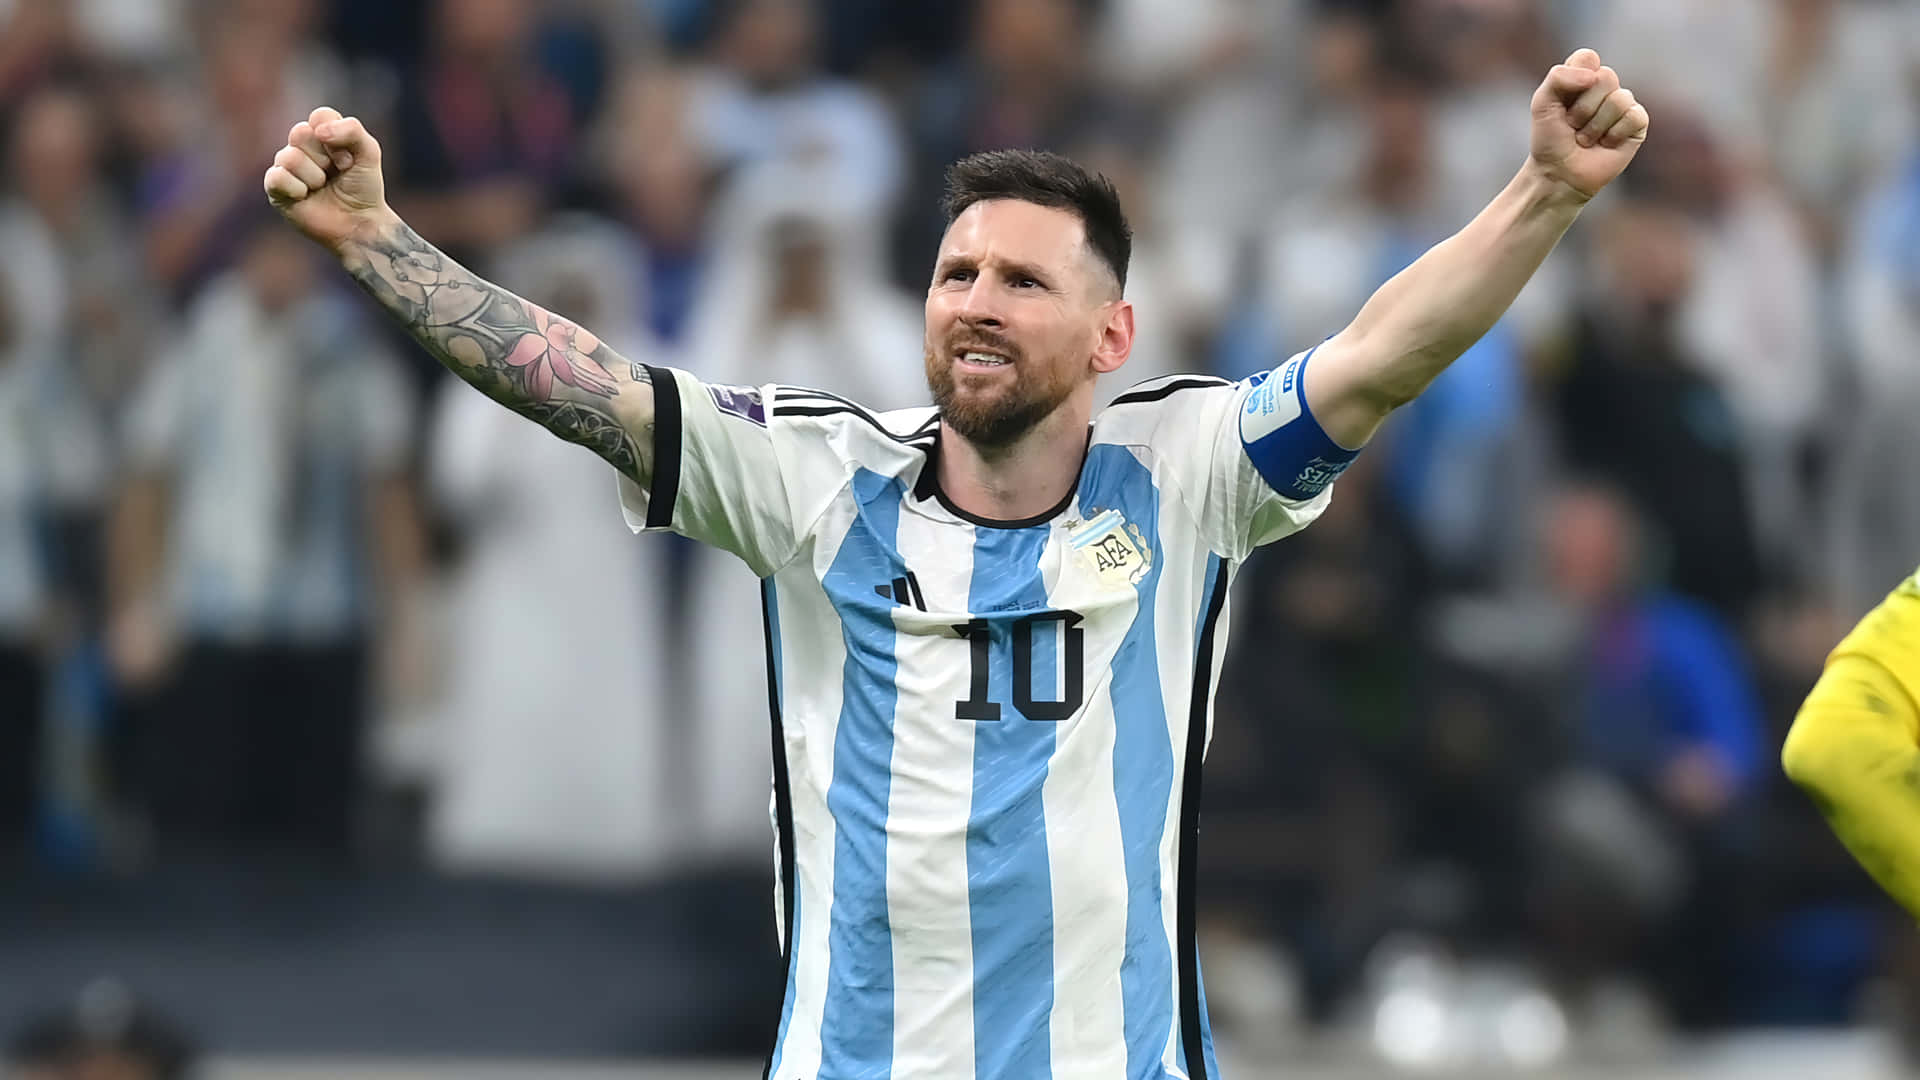 Fodboldstjernelionel Messi I Aktion.